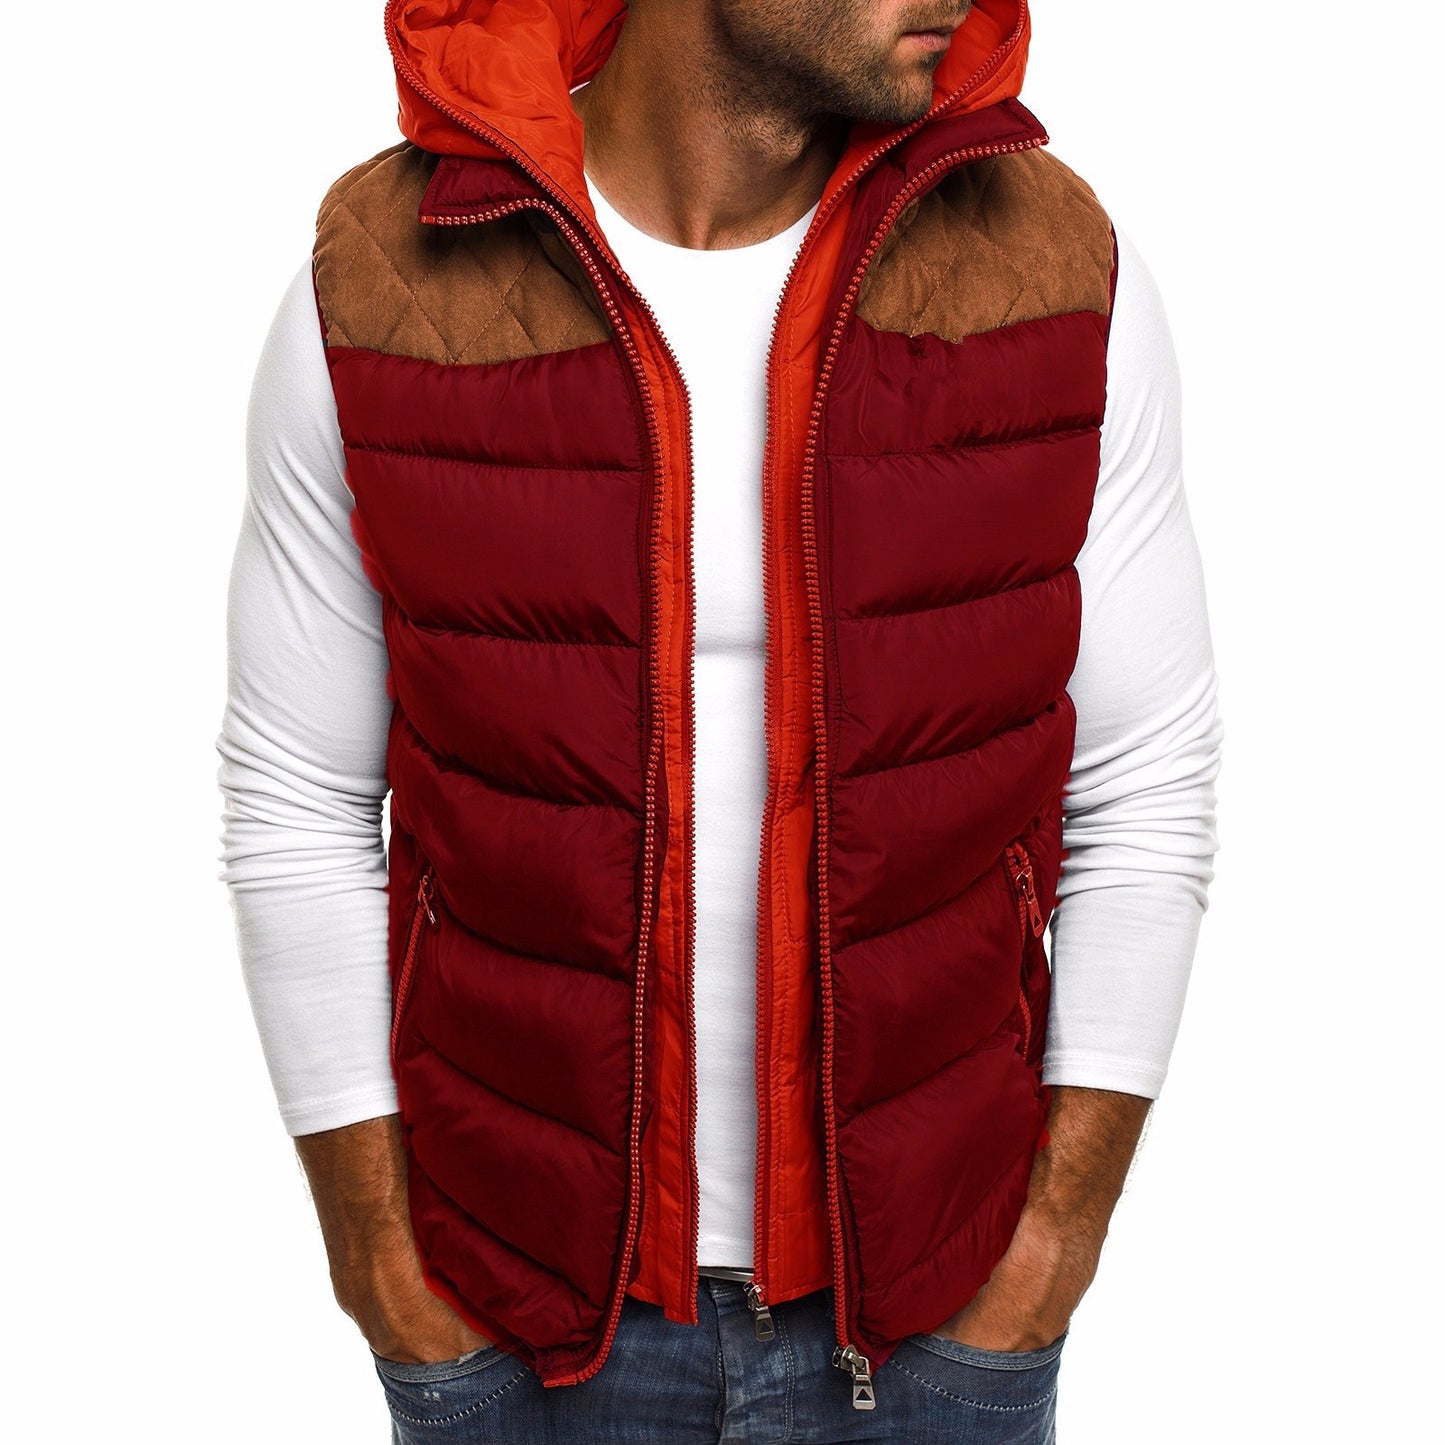 Men's hooded cotton vest